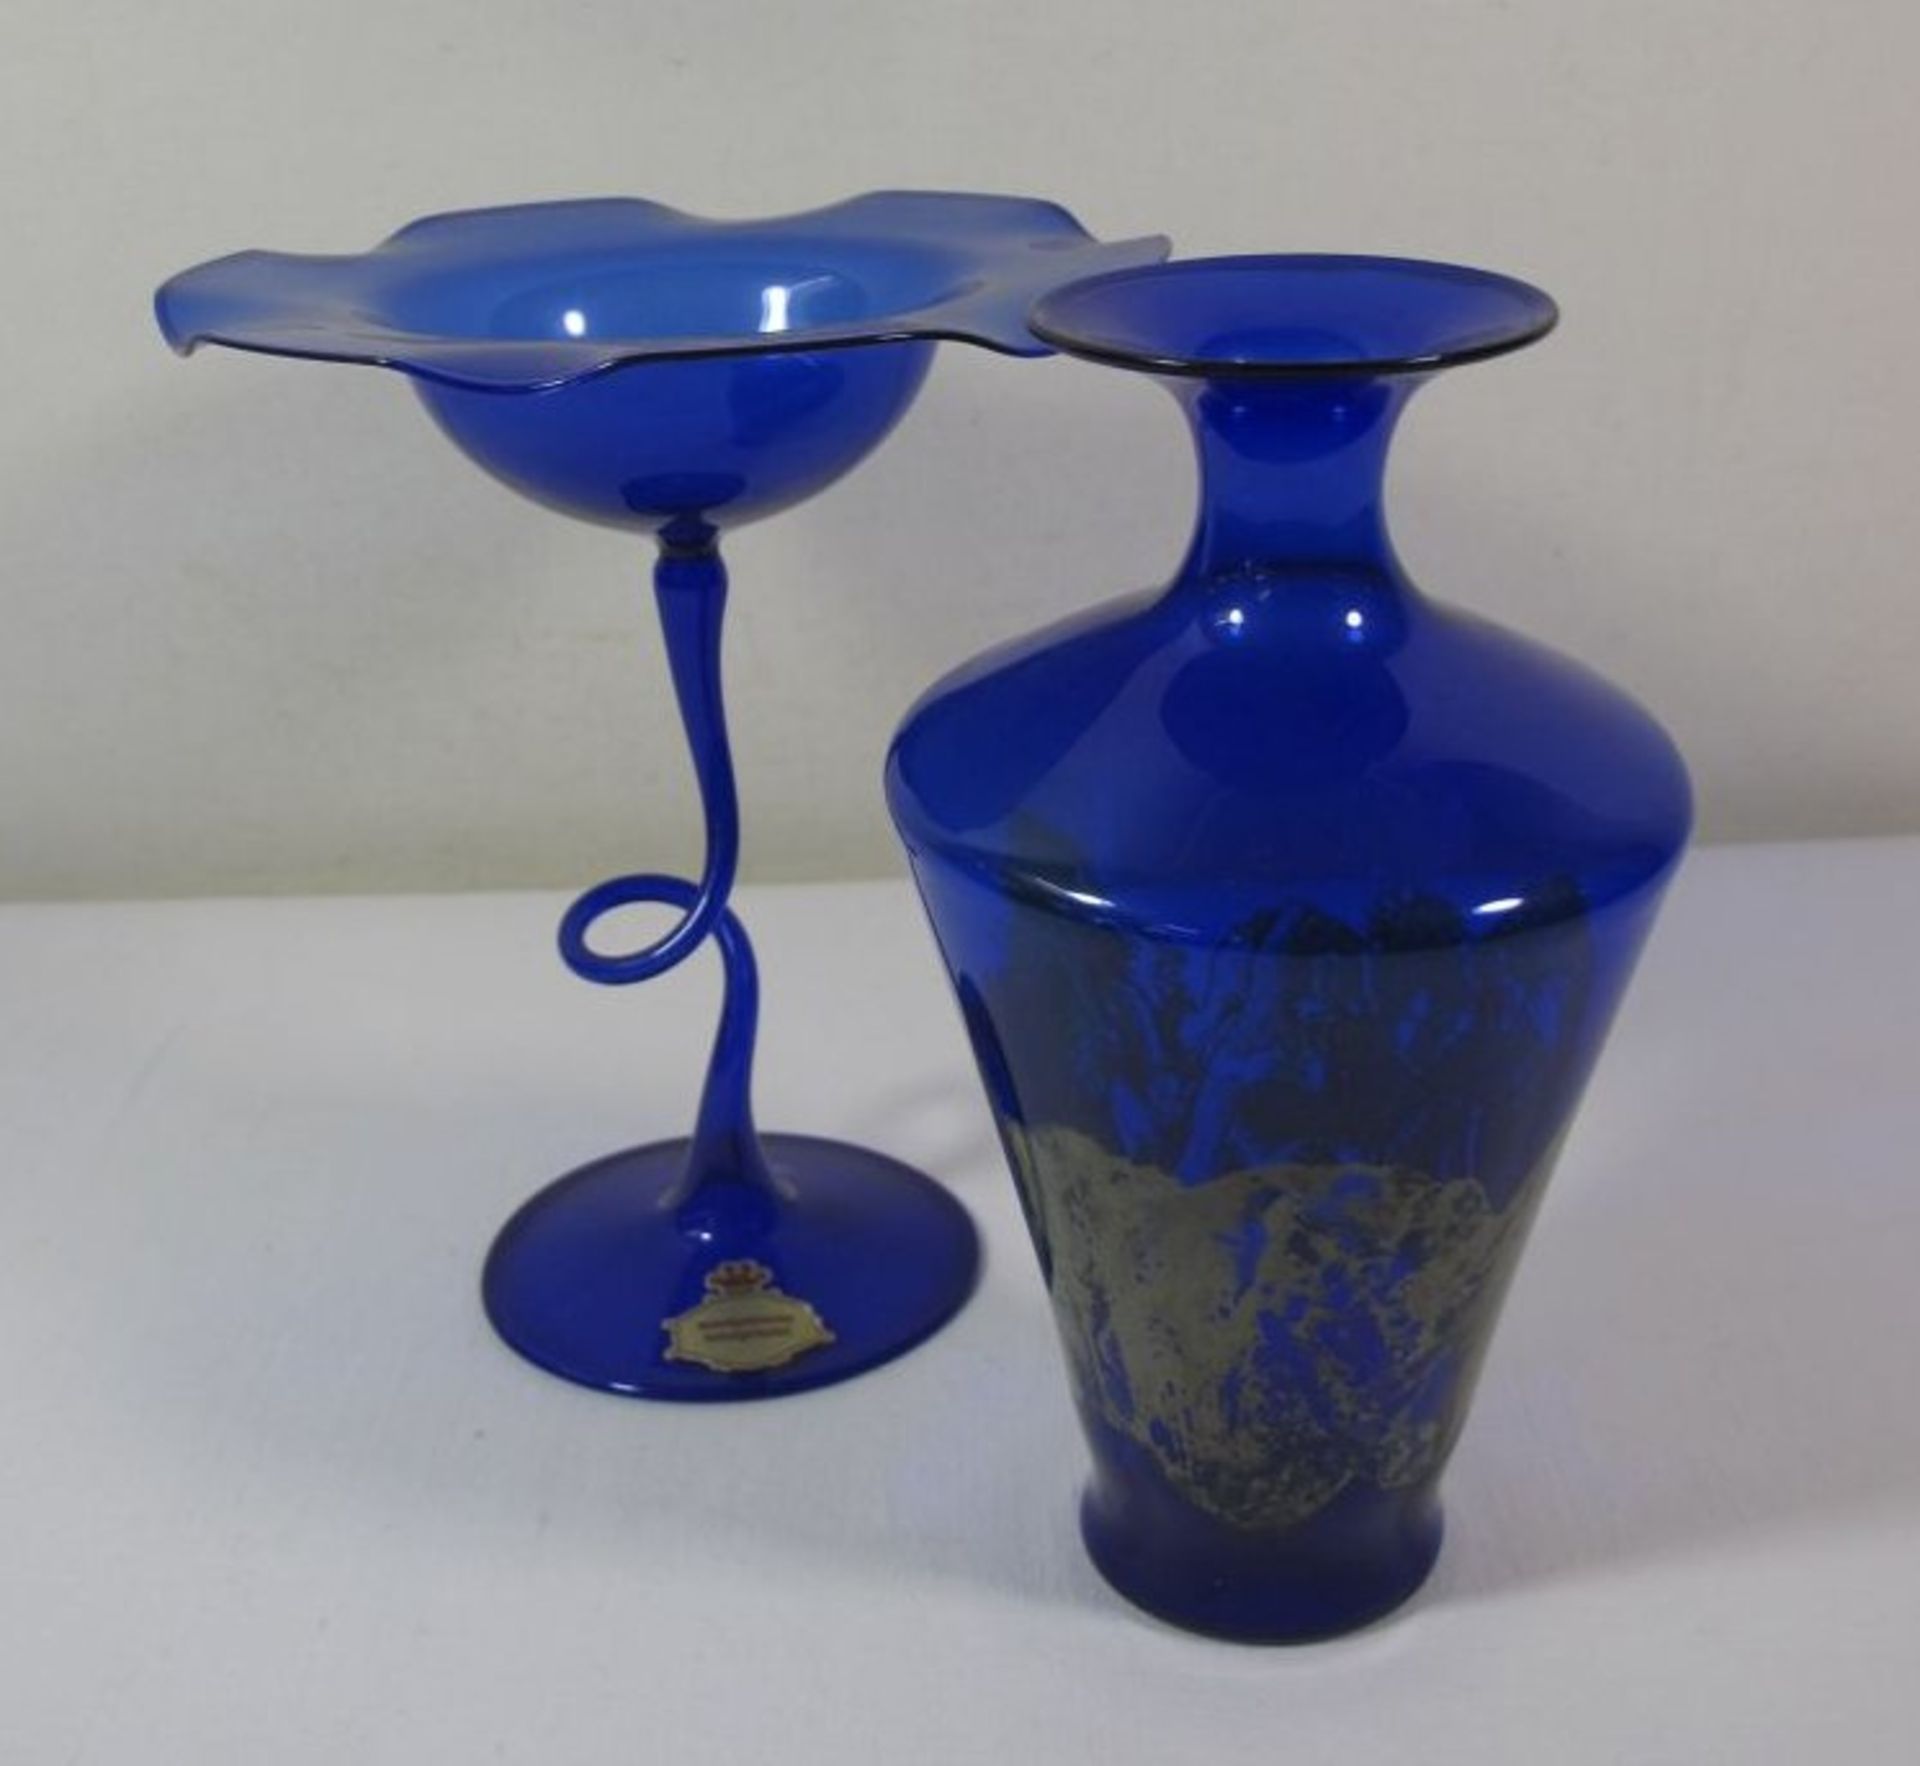 2 Teile Kunstglas, leichtes blaues Glas, farbige Einschmelzungen, ca. H-17cm.